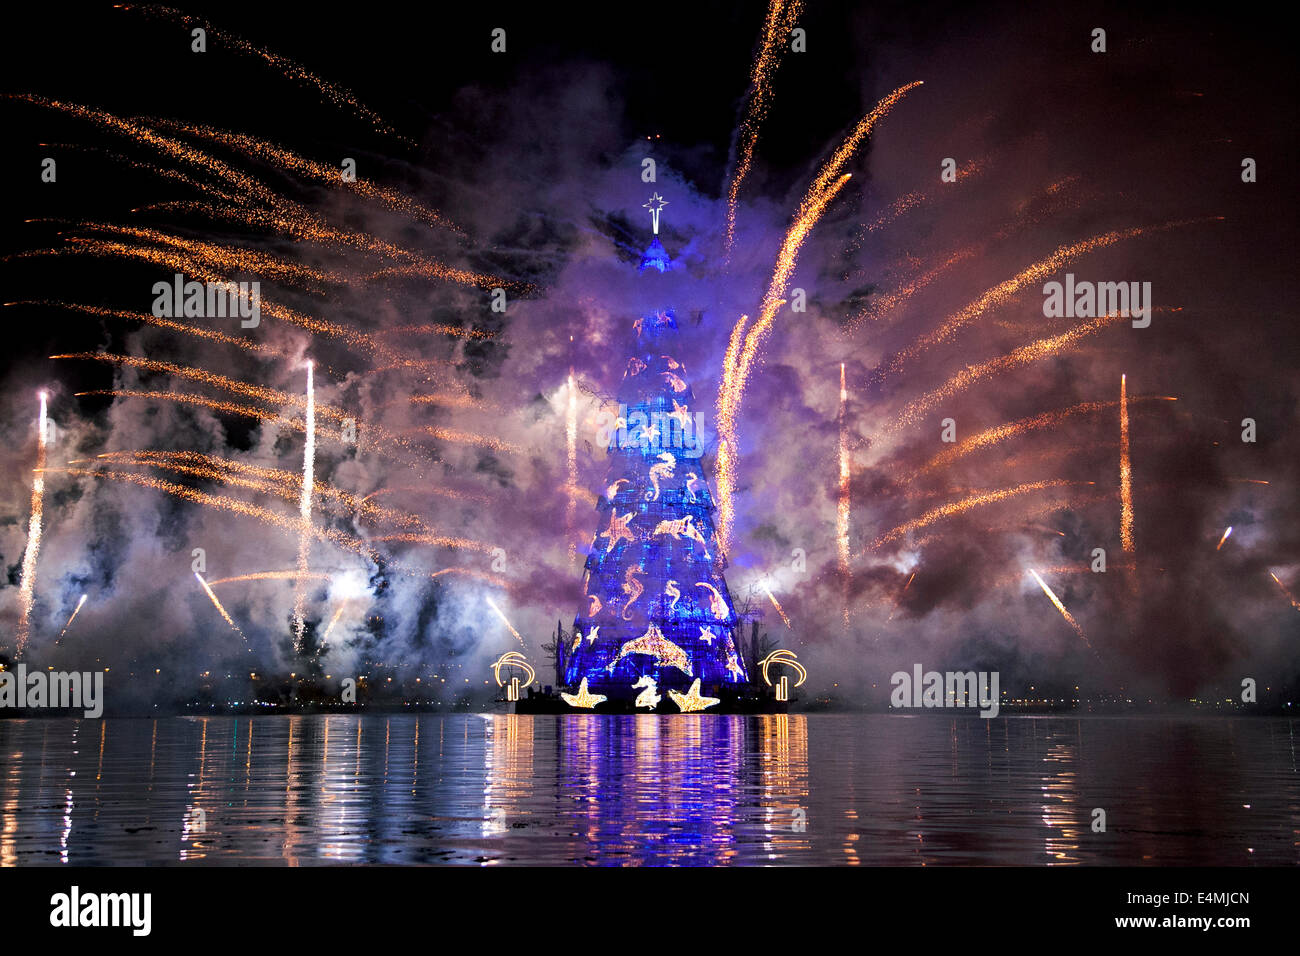 Rio De Janeiro, Brasilien 1. Dezember 2013 - berühmte Lagoa Weihnachtsbaum beleuchtet mit Lichtern und Feuerwerk zu feiern Weihnachten Stockfoto